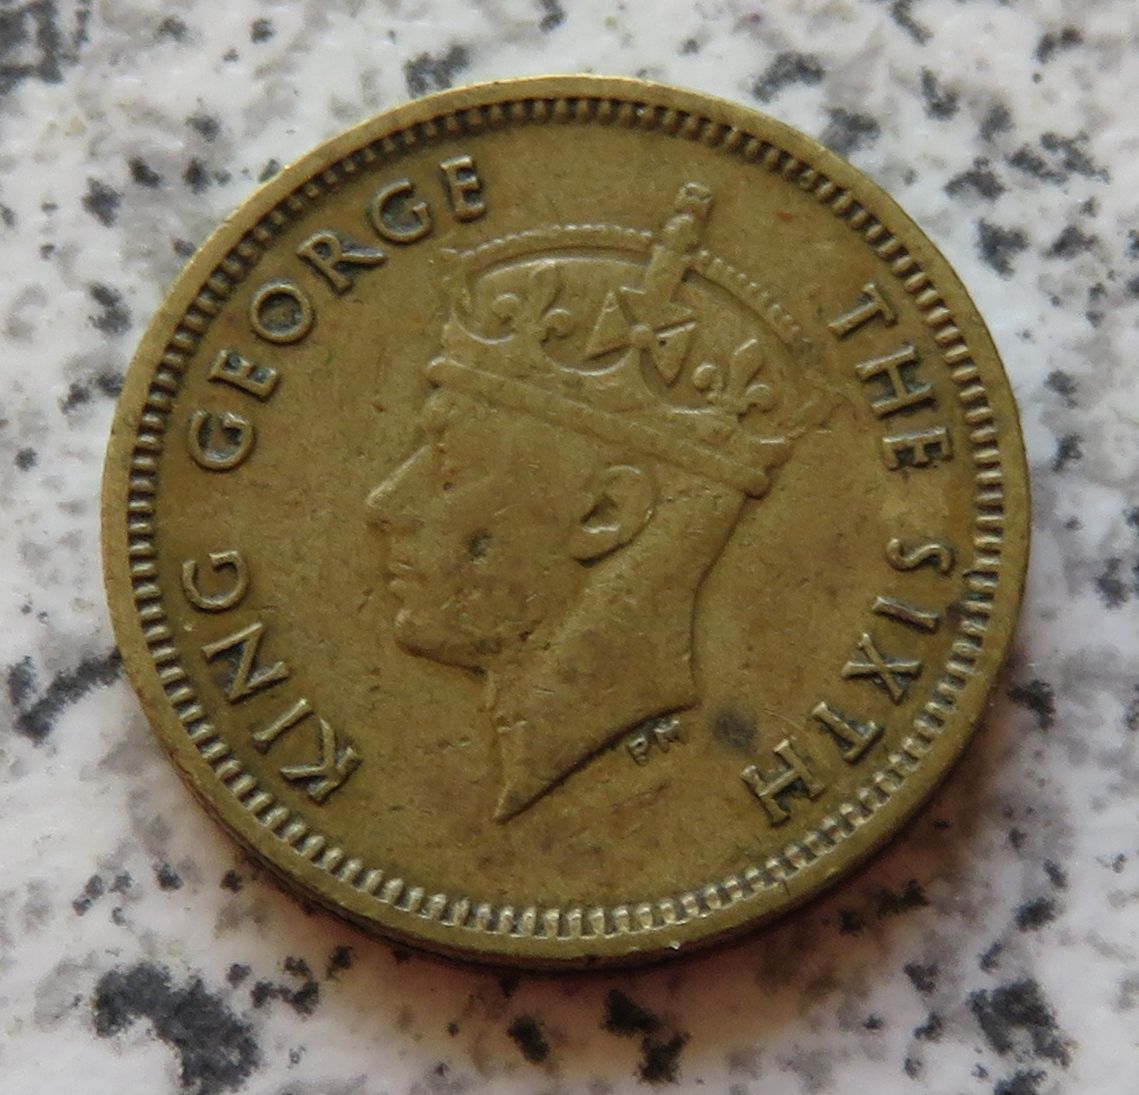  Hong Kong 5 Cents 1949   